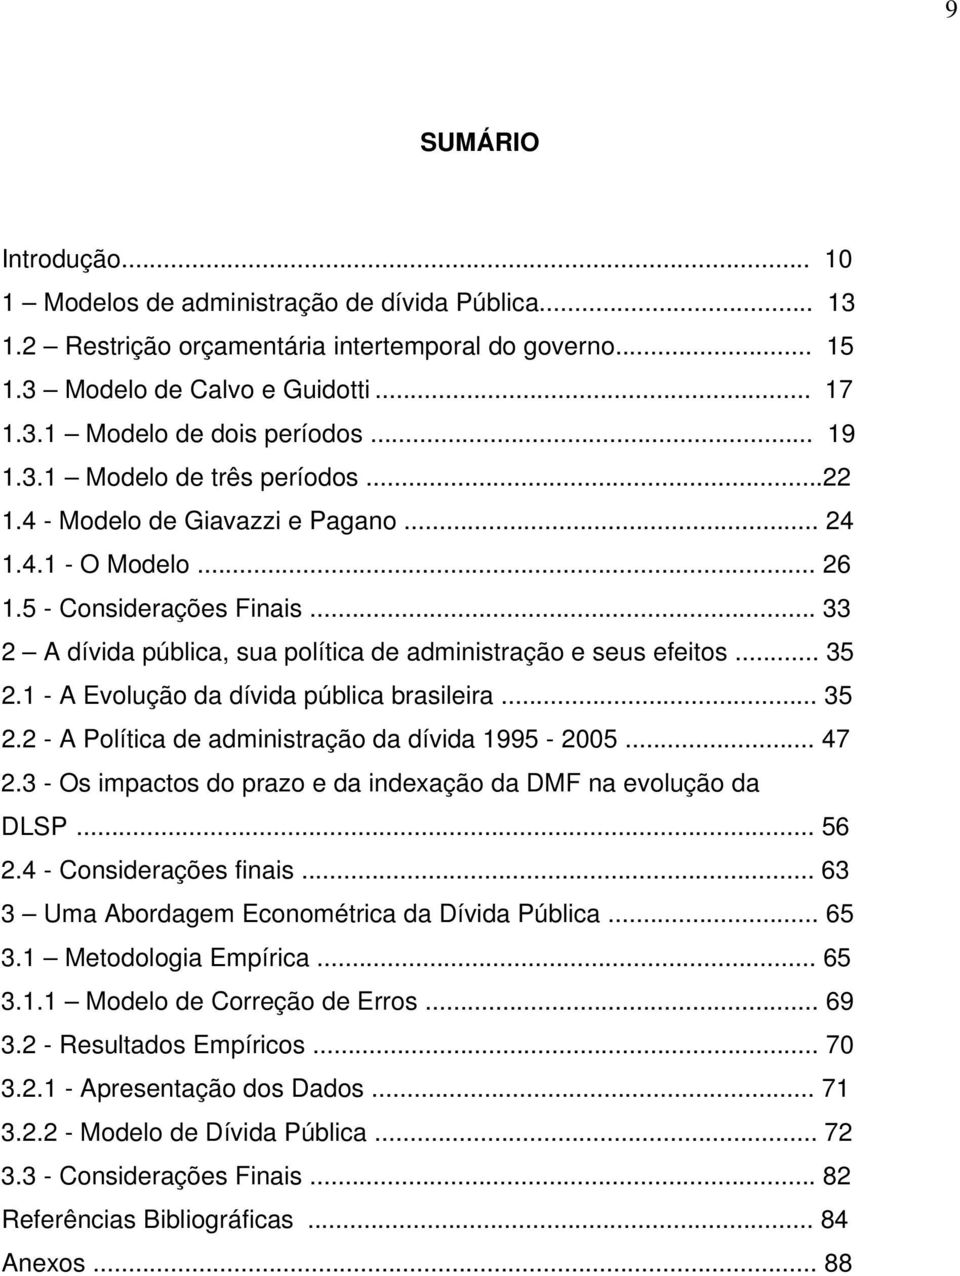 .. 35 2.1 - A Evolução da dívida pública brasileira... 35 2.2 - A Política de administração da dívida 1995-2005... 47 2.3 - Os impactos do prazo e da indexação da DMF na evolução da DLSP... 56 2.